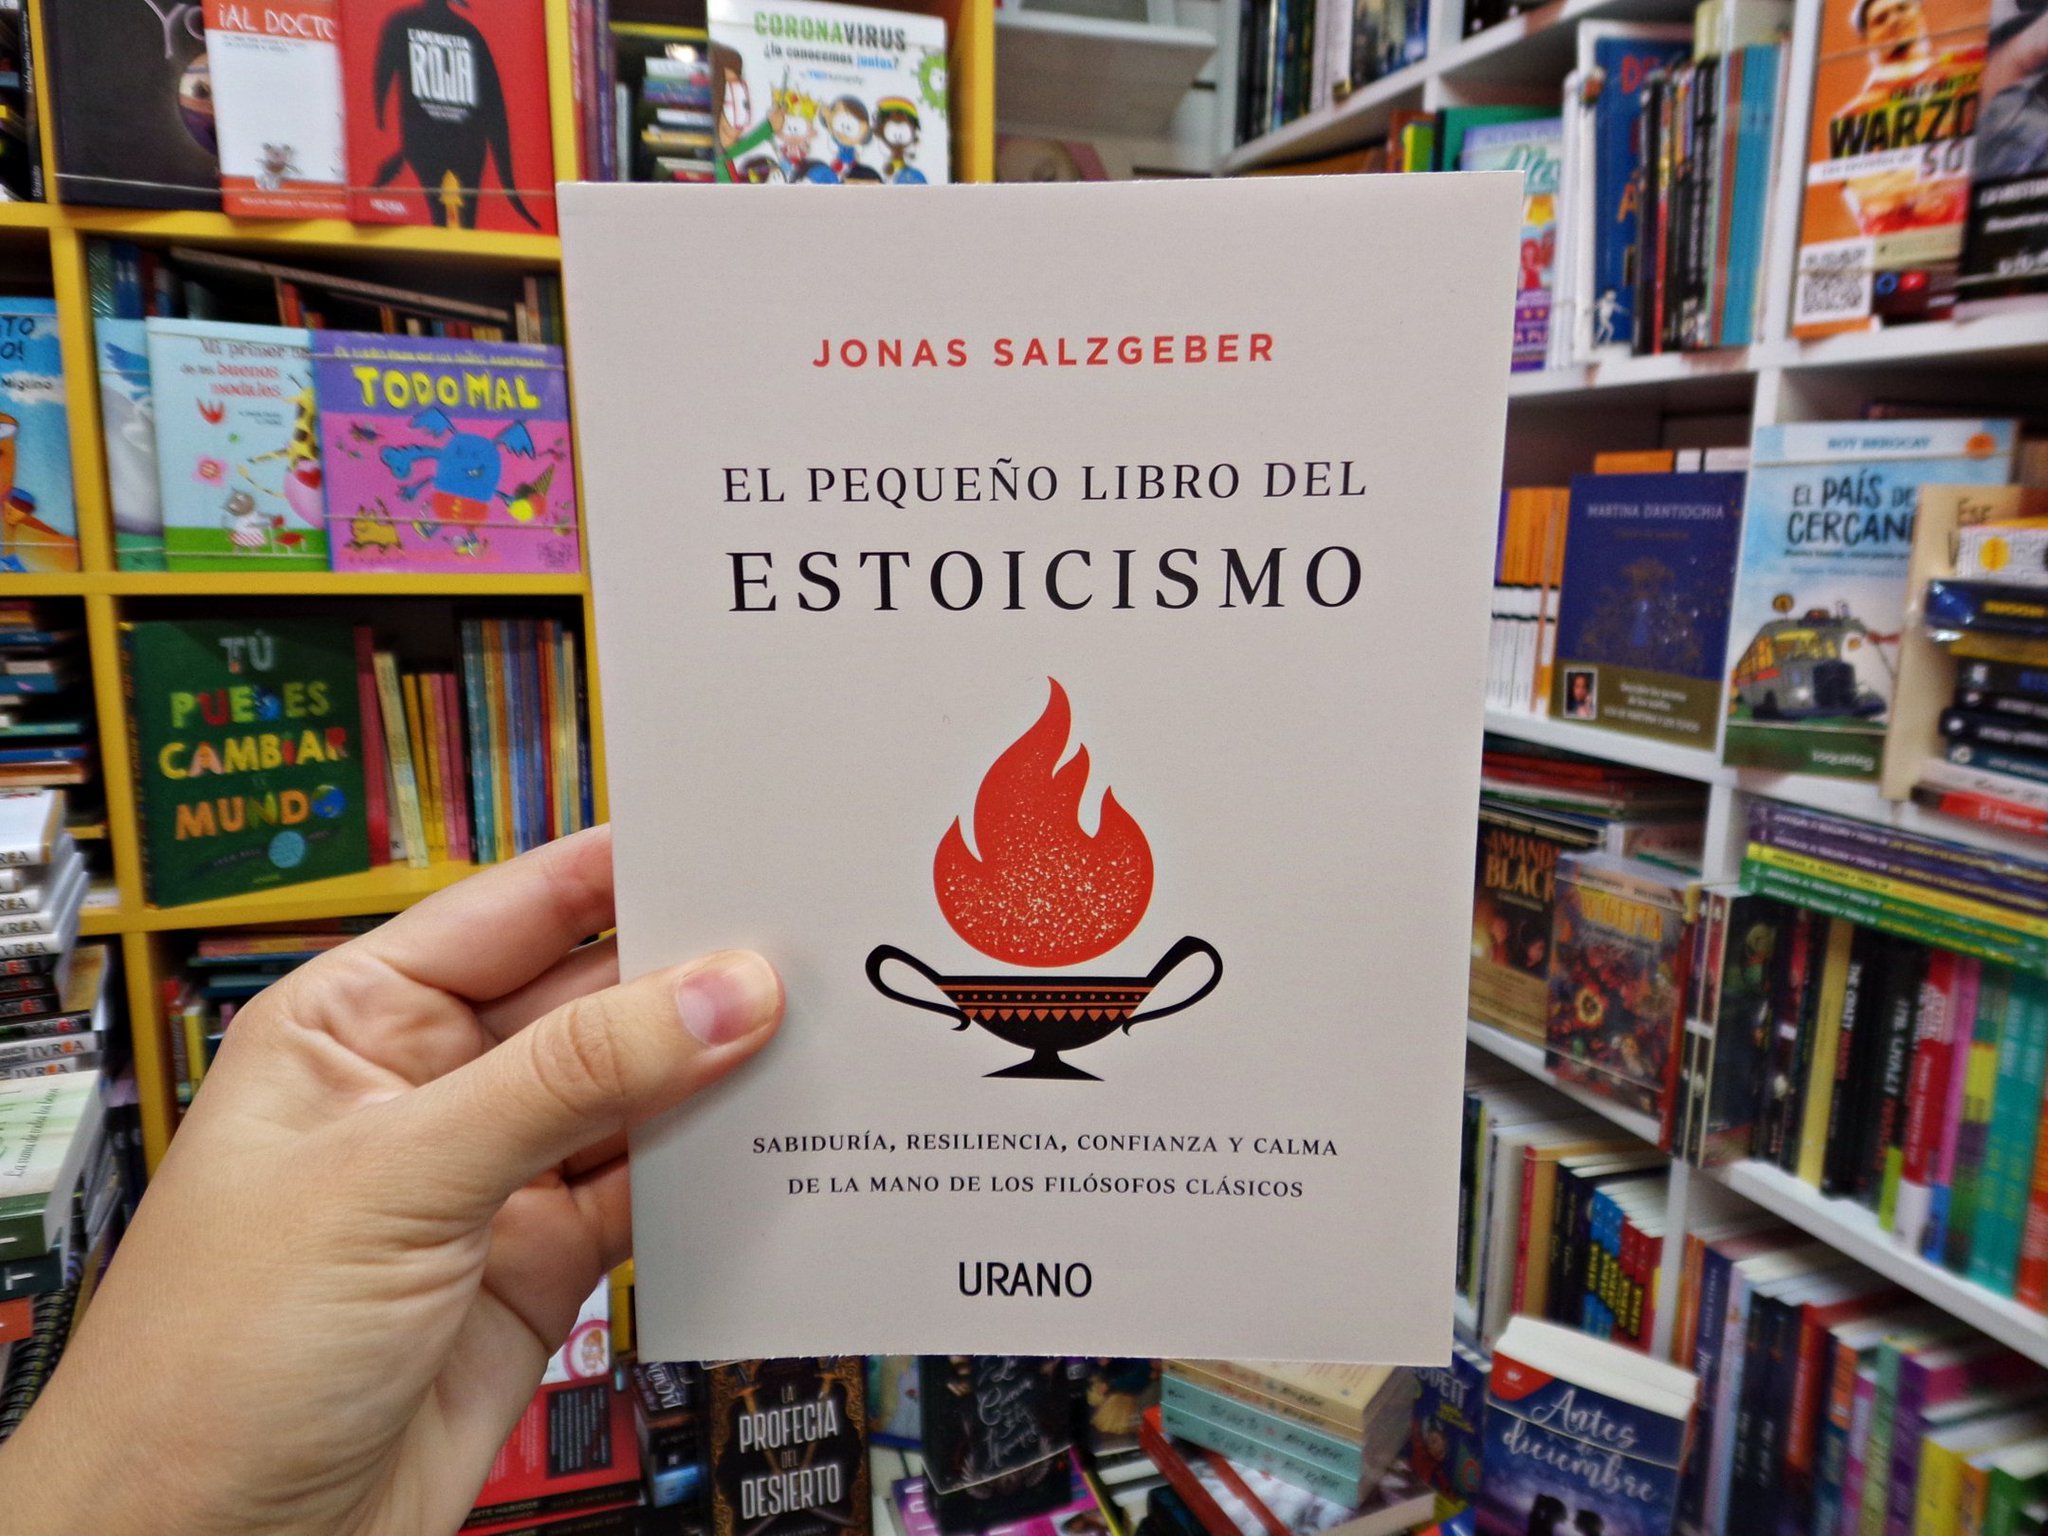 El pequeño libro del estoicismo: Sabiduría, resiliencia, confianza